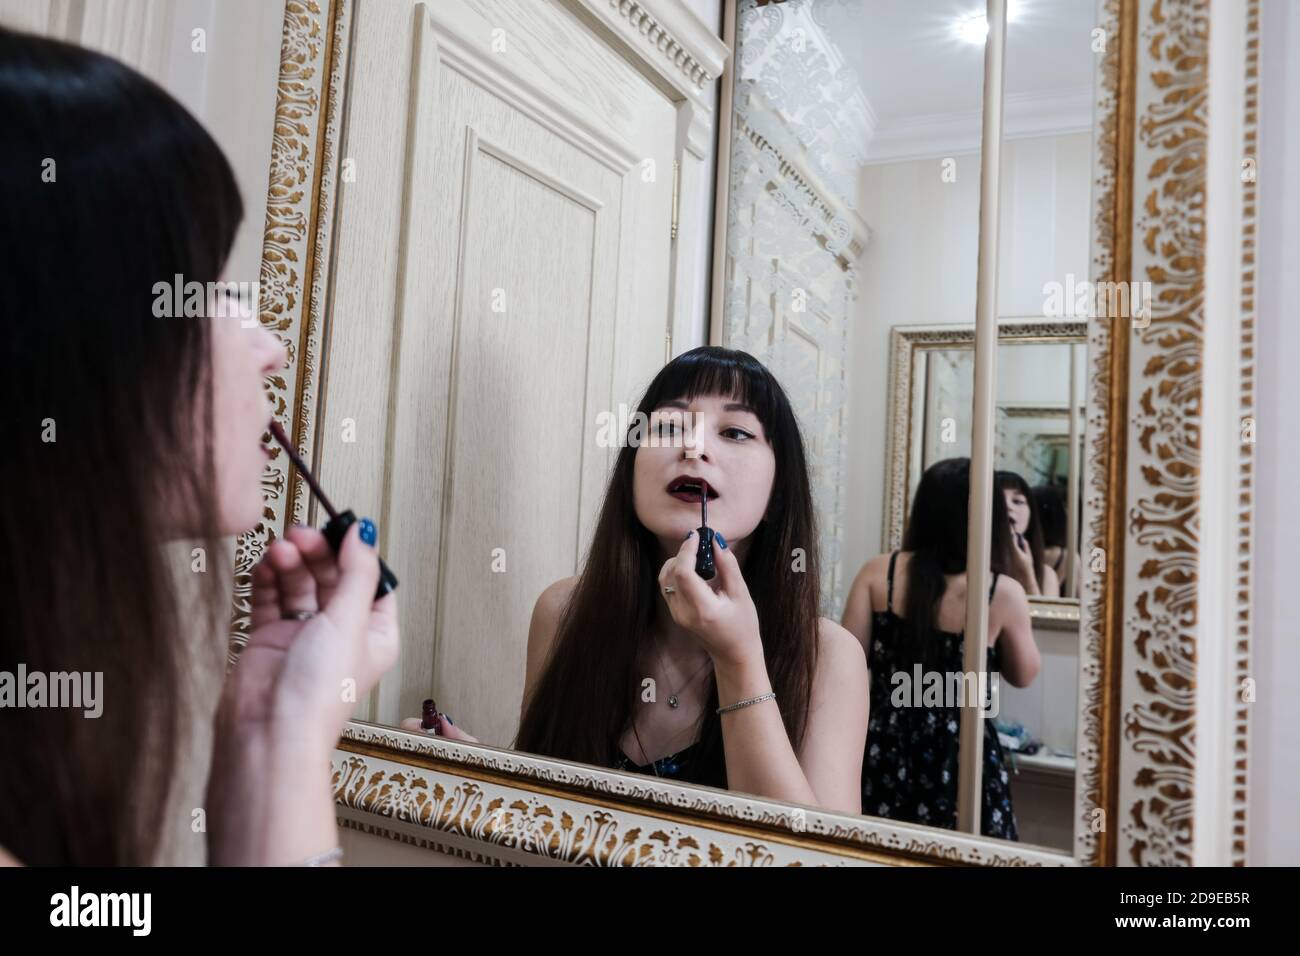 Jeune femme appliquant un rouge à lèvres devant un miroir. Jeune fille se prépare avec son maquillage dans une salle de bains de l'hôtel. Jolie femme peinture lèvres Banque D'Images